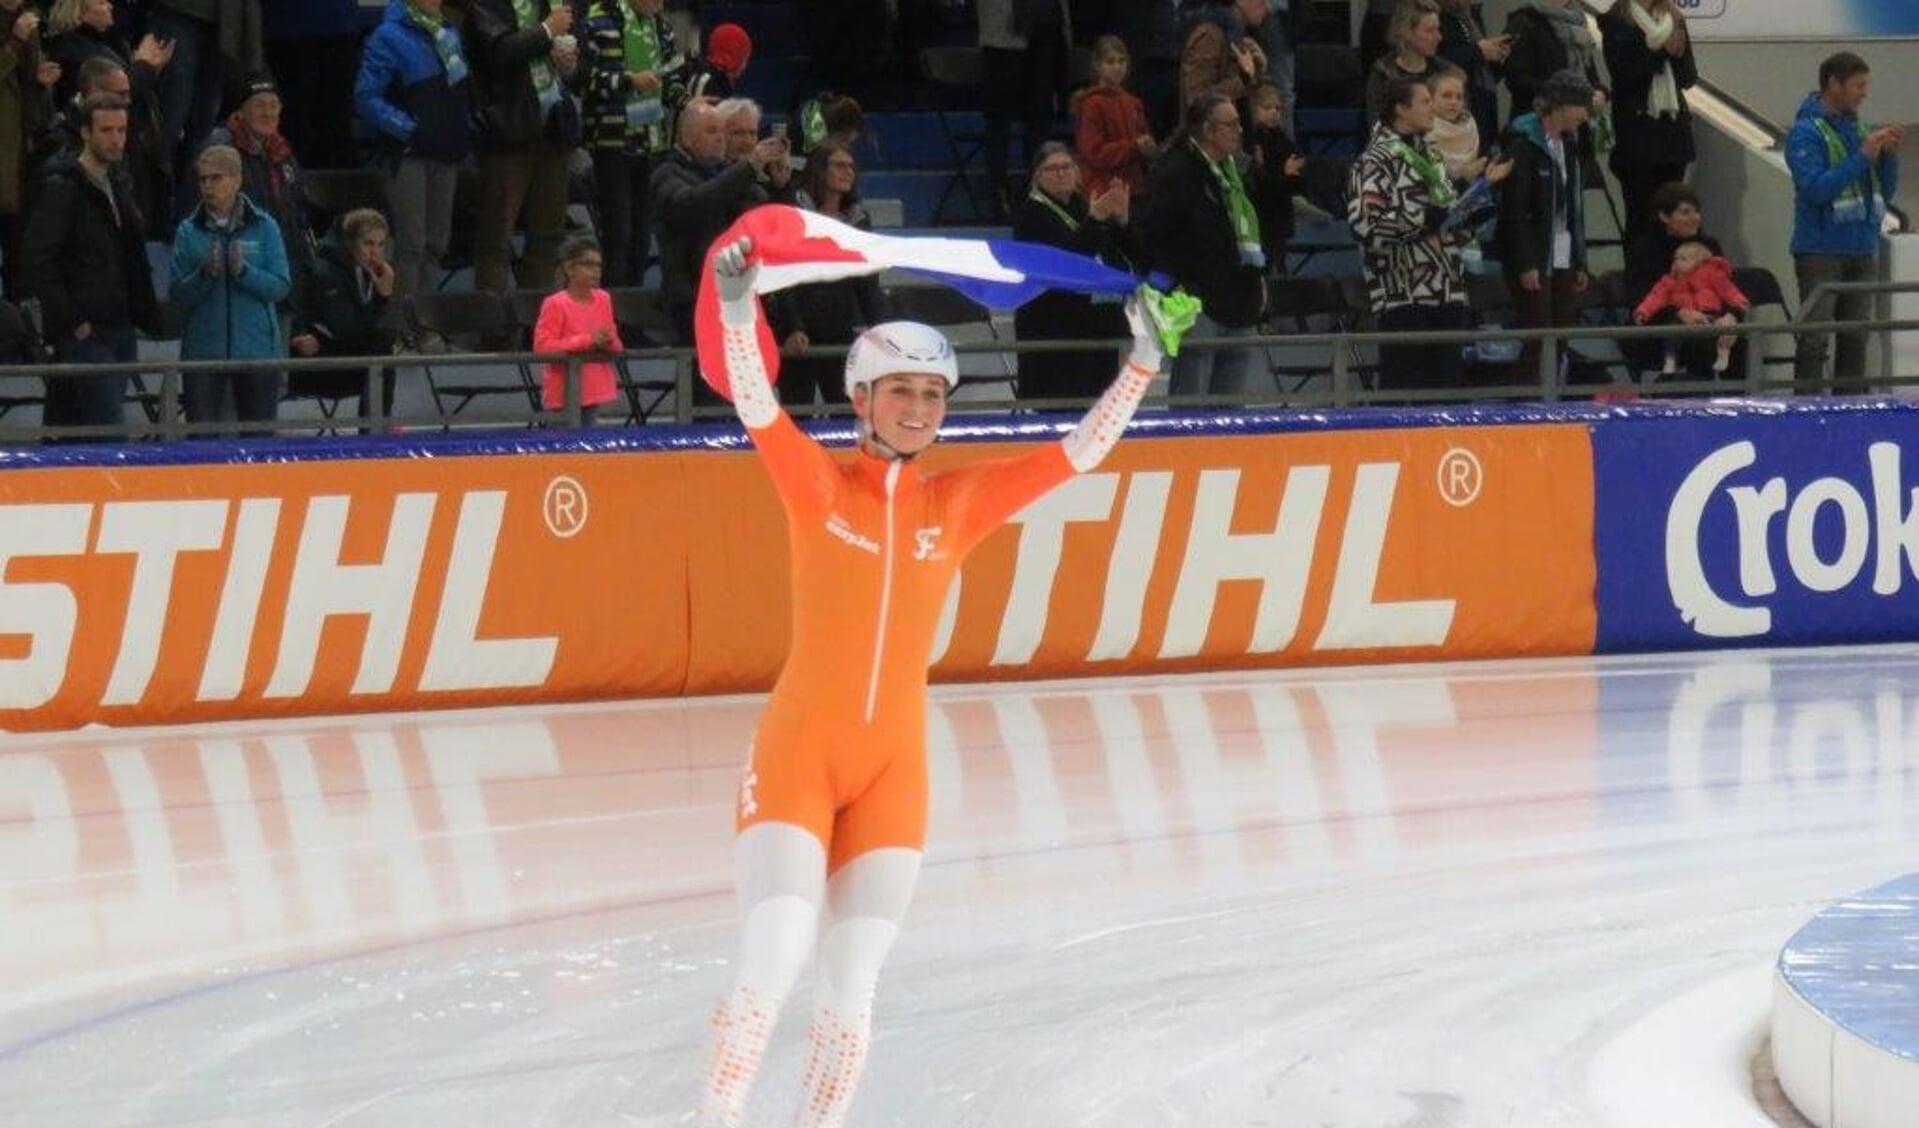 Wereldkampioen Irene Schouten is lijstduwer bij NatuurlijkmBBW. 